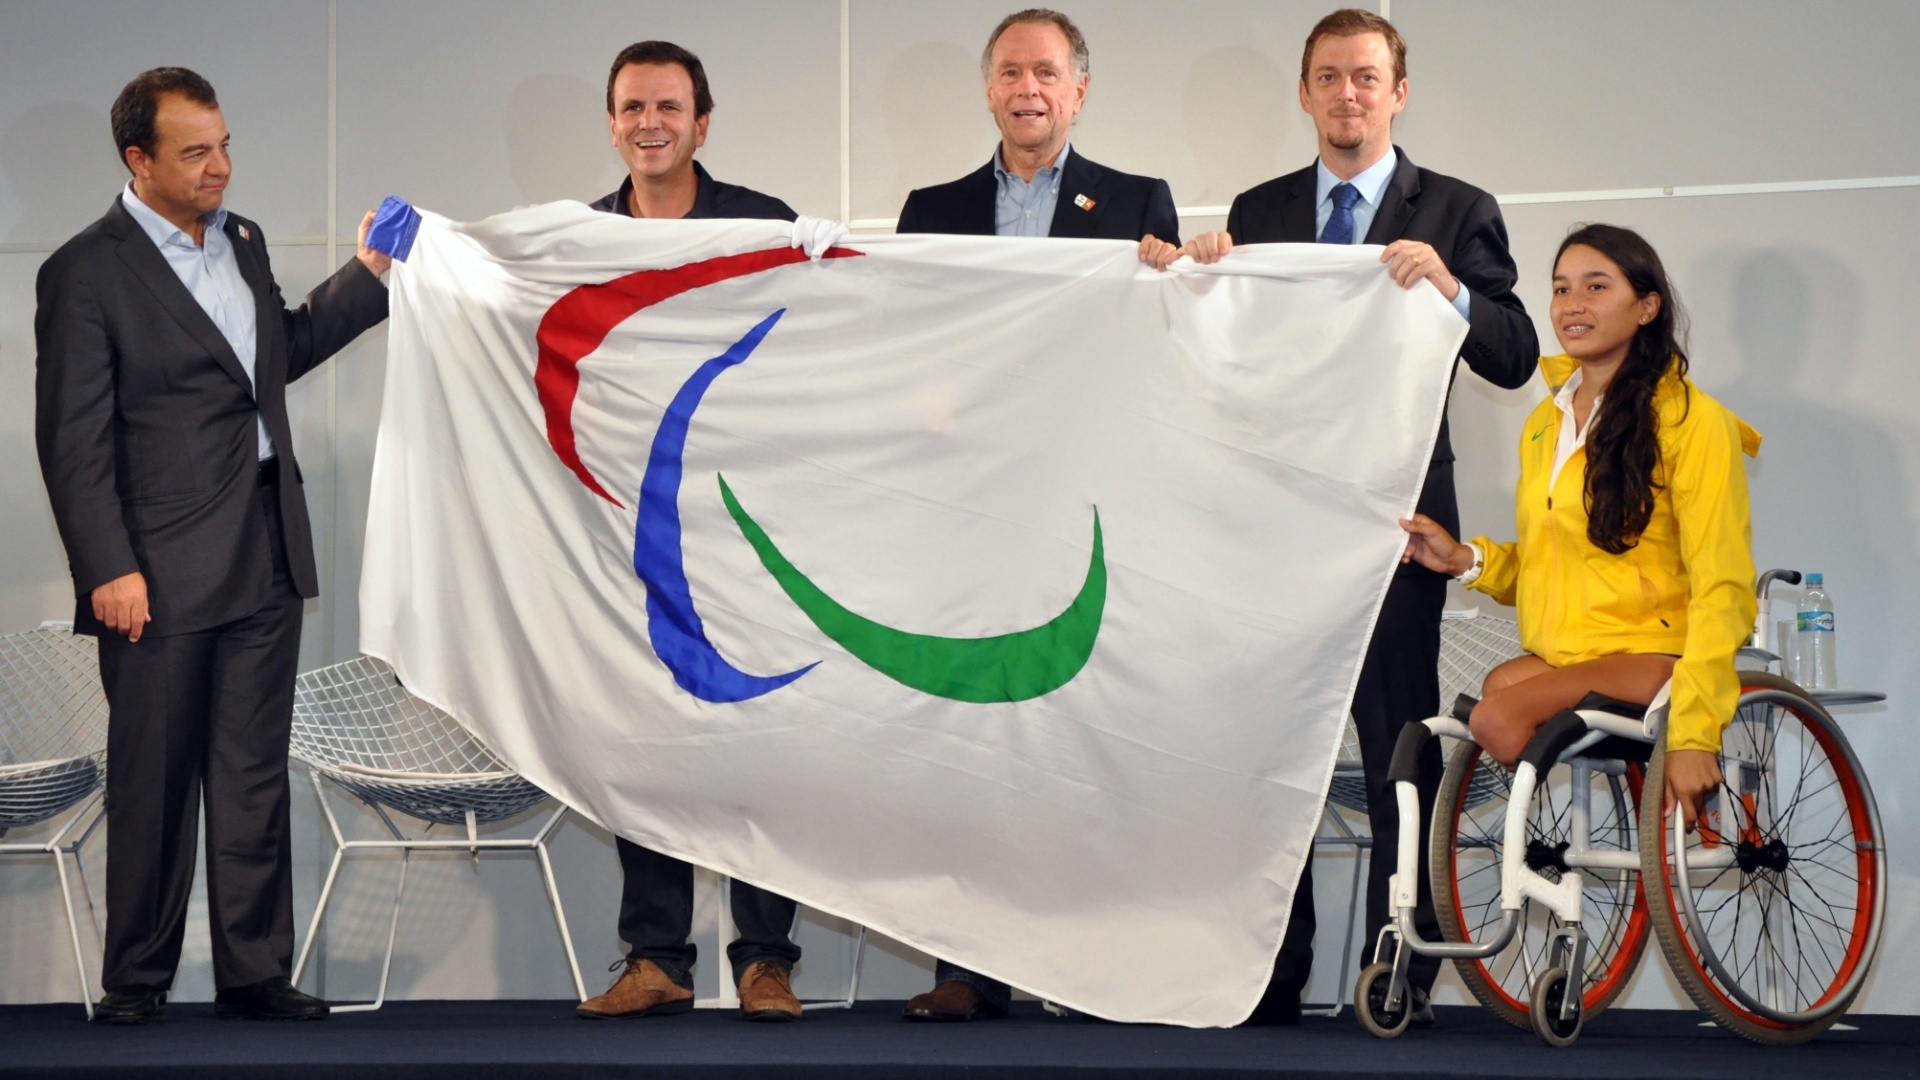 Sérgio Cabral, Eduardo Paes, Carlos Arthur Nuzman, Andrew Parsons e Natália Mayara participaram da apresentação da bandeira paraolímpica no Rio de Janeiro